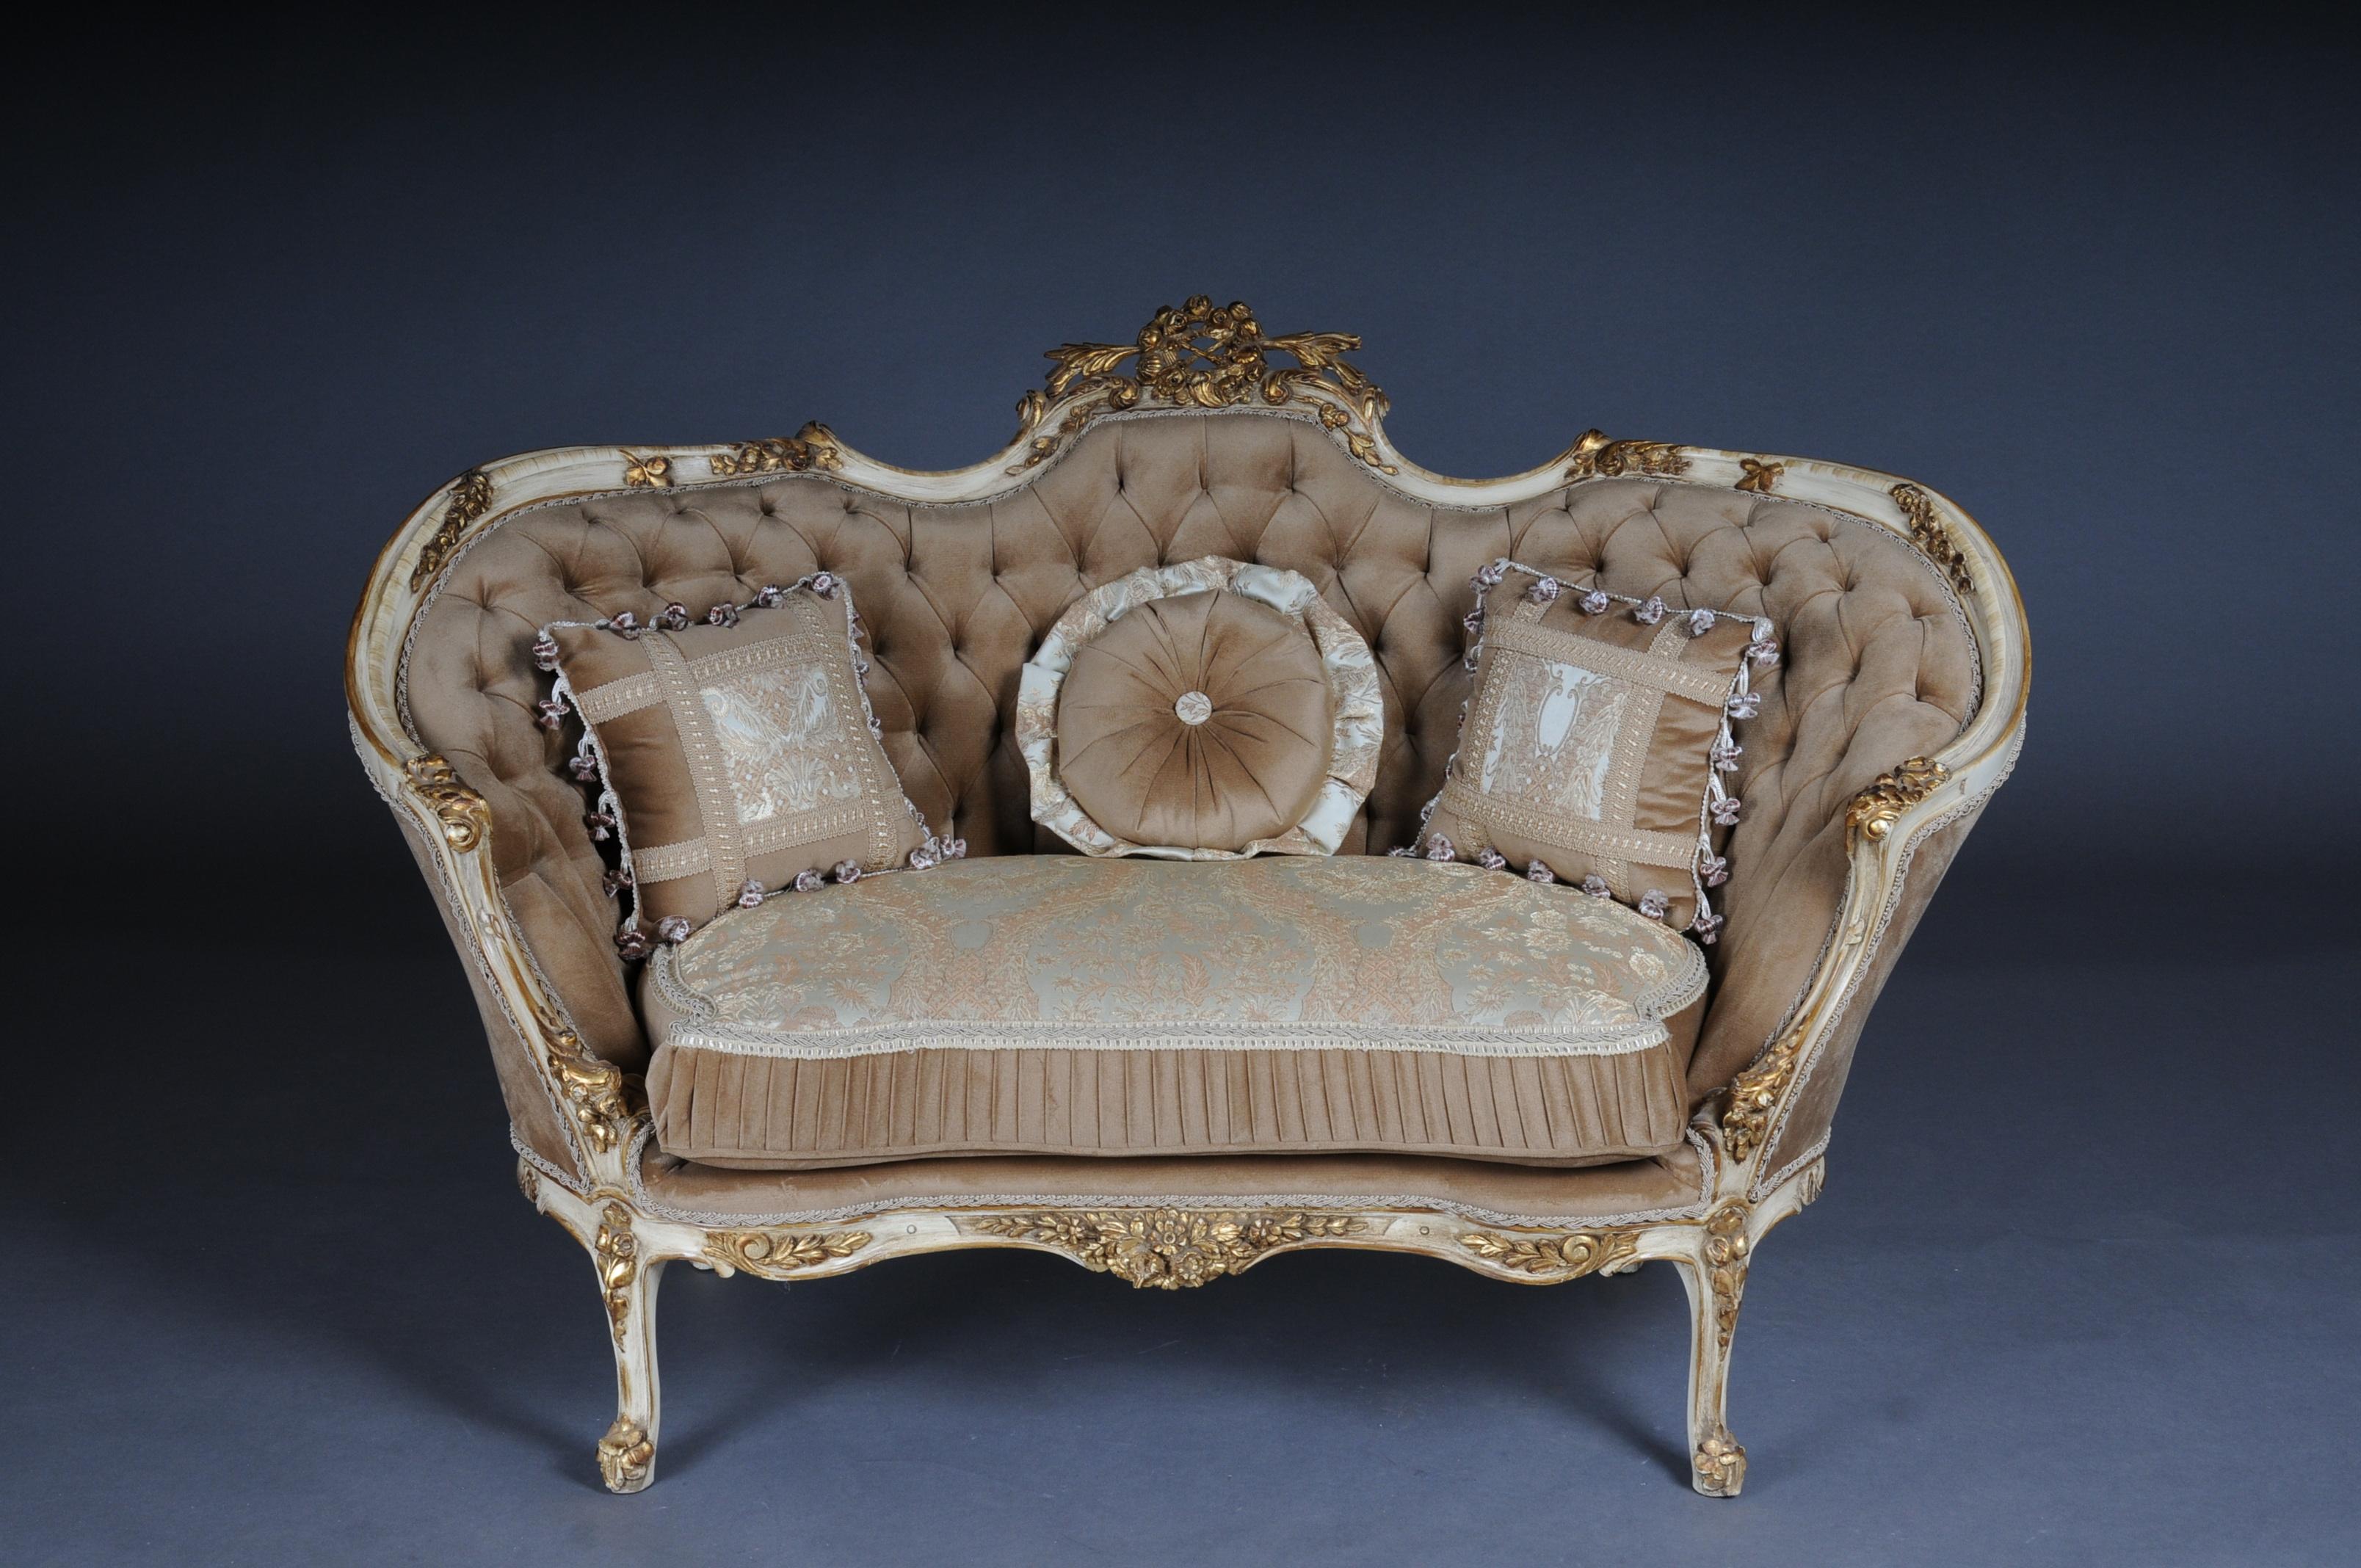 Elegantes Sofa, Couch, Canapé im Rokoko- oder Louis XV-Stil.

Massives Buchenholz, geschnitzt und vergoldet. Ansteigende Rückenlehneneinfassung mit durchbrochener Rocaille-Bekrönung. Angemessen geschwungener Rahmen mit reich geschnitztem